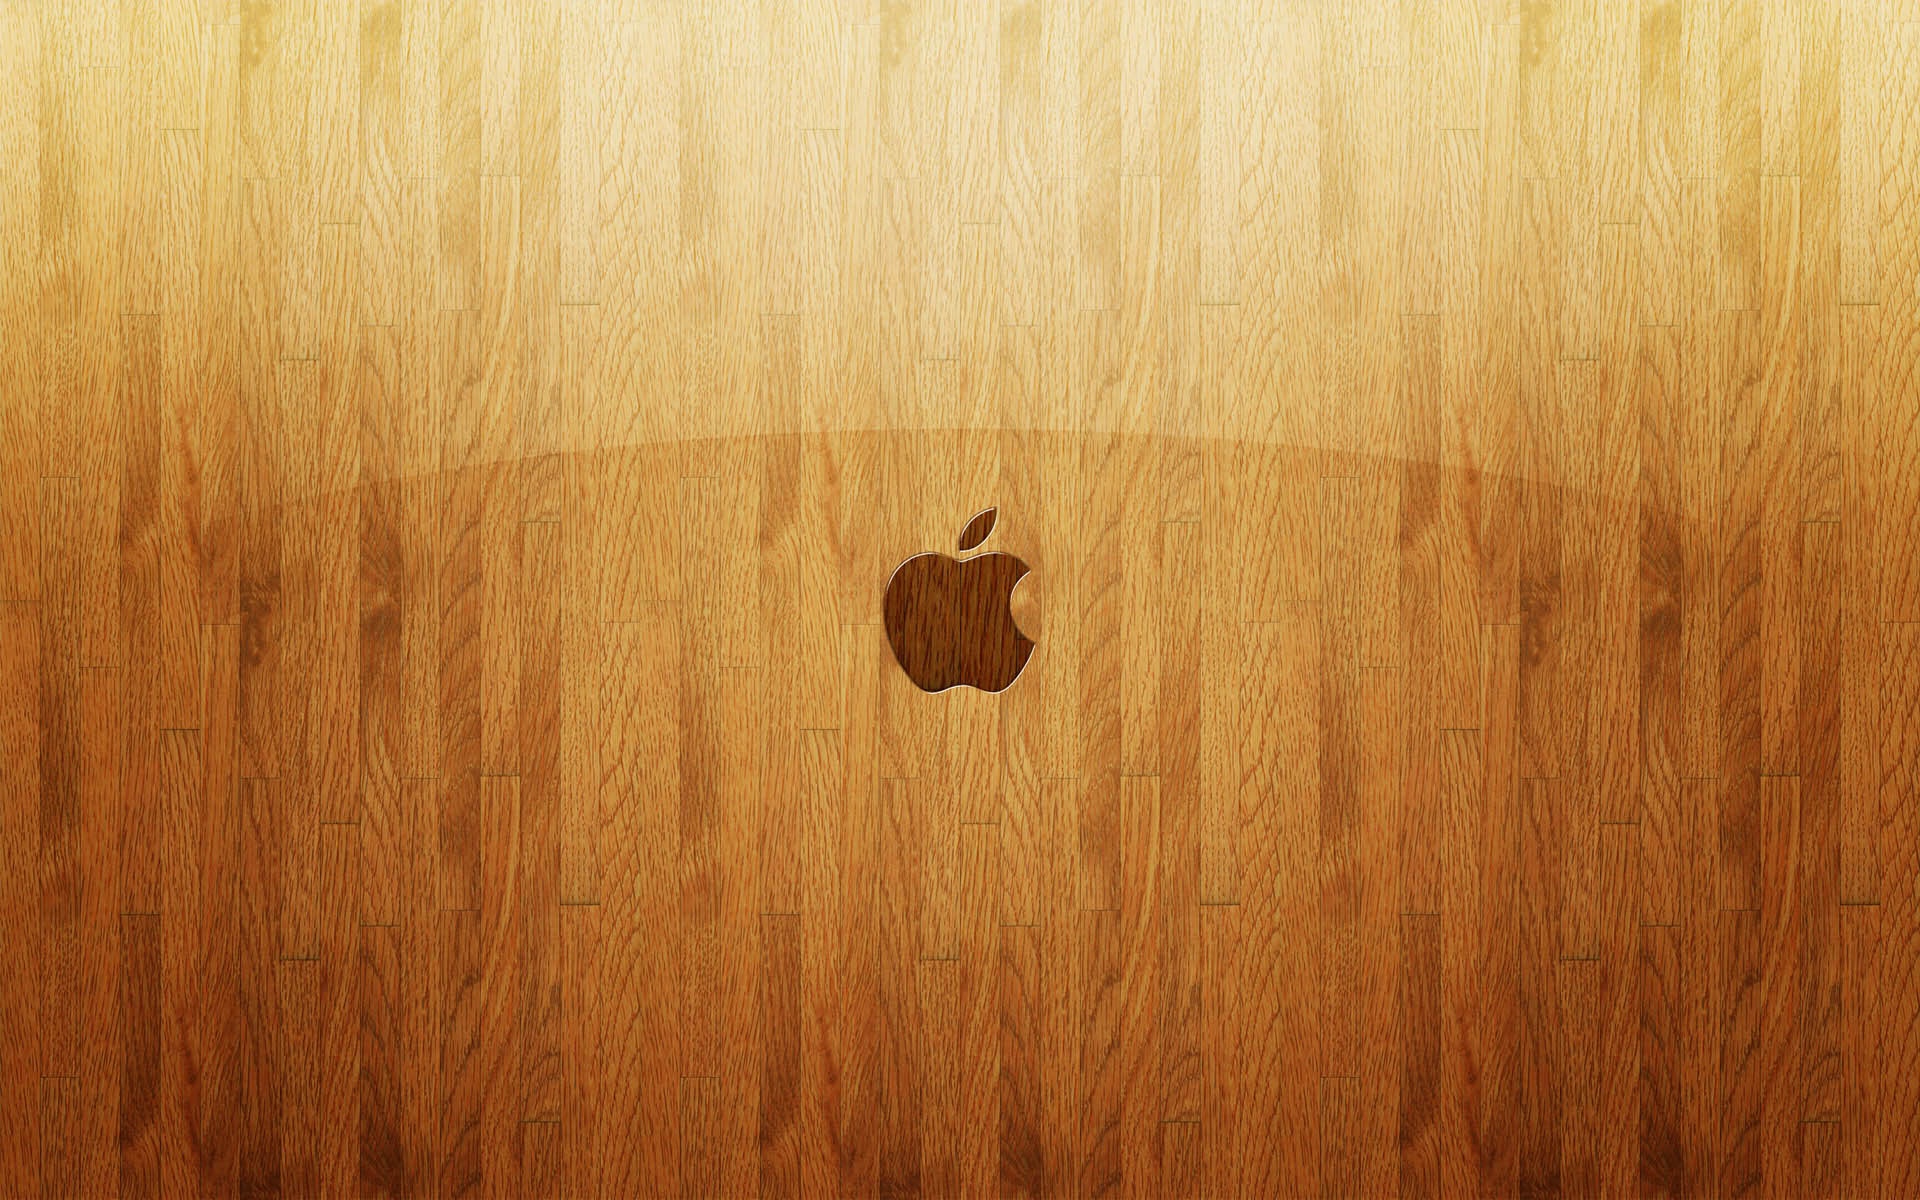 Apple Wallpaper Hd Wood - HD Wallpaper 